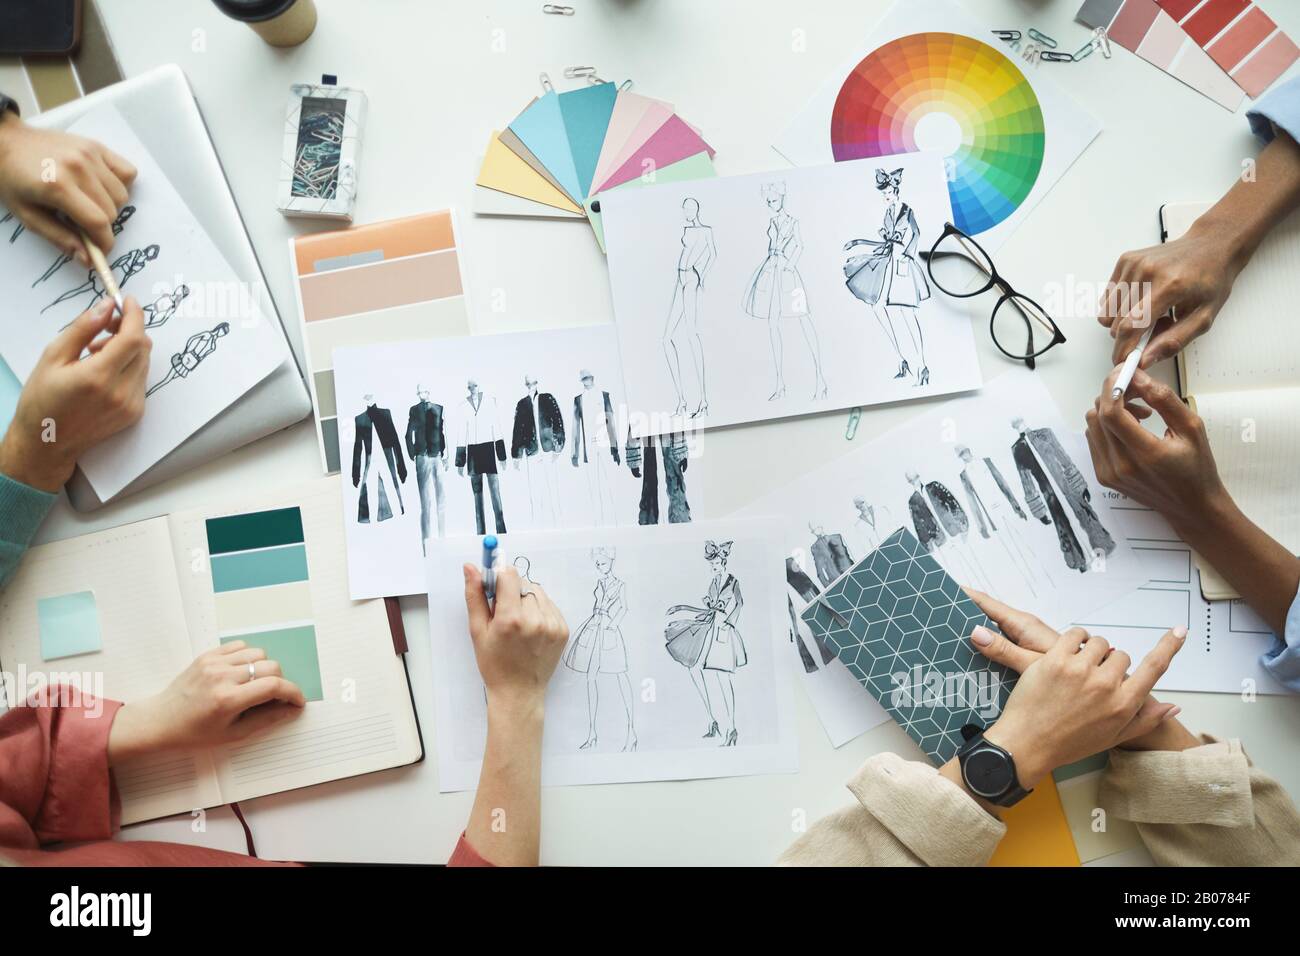 Ein Team von Designern, die mit Skizzen von Kleidung und Farbpalette arbeiten und die Sammlung von Planungen im Team planen Stockfoto